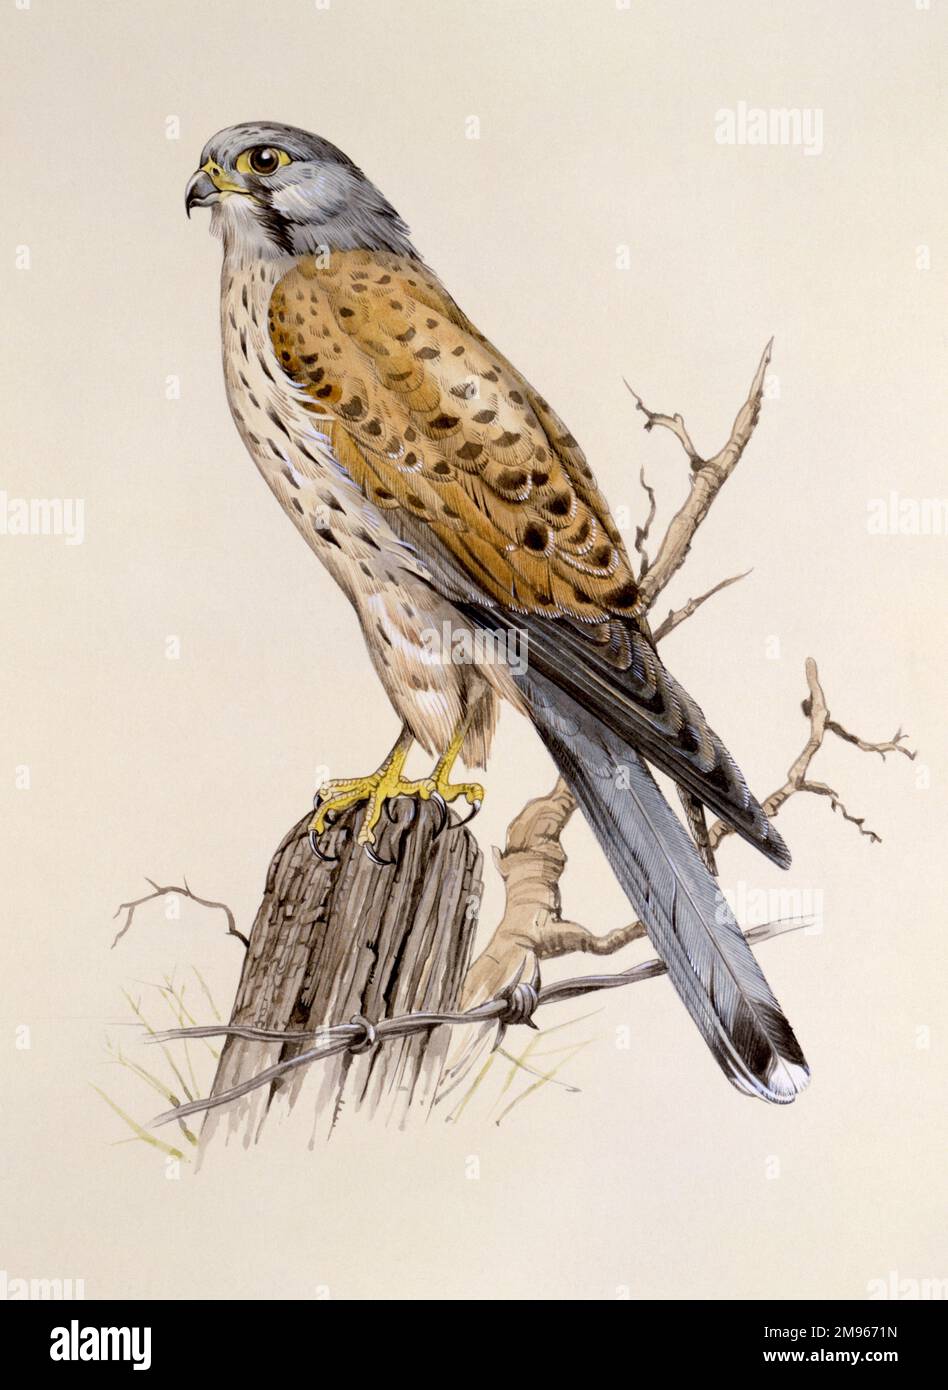 Un faucon pèlerin (Falco peregrinus) perché sur un poste de clôture, au-dessus d'un fil barbelé. Peinture par Malcolm Greensmith Banque D'Images